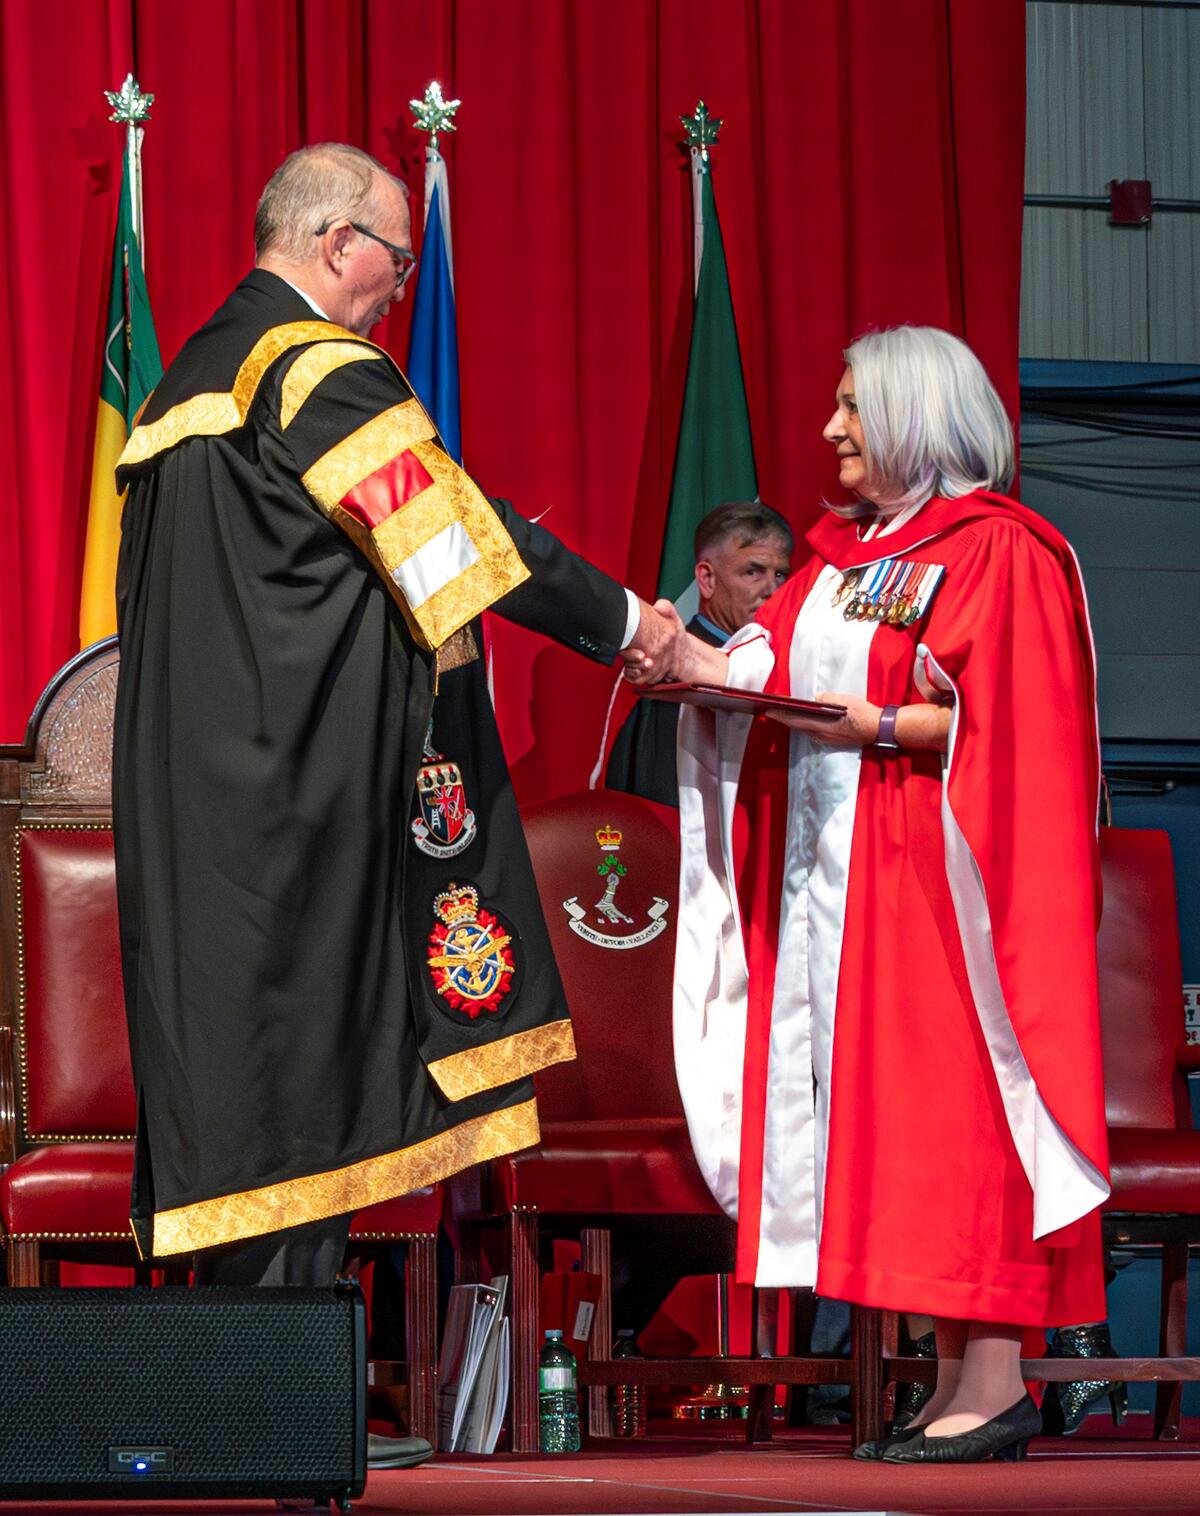 La gouverneure générale serre la main d'un homme alors qu'elle reçoit un diplôme.